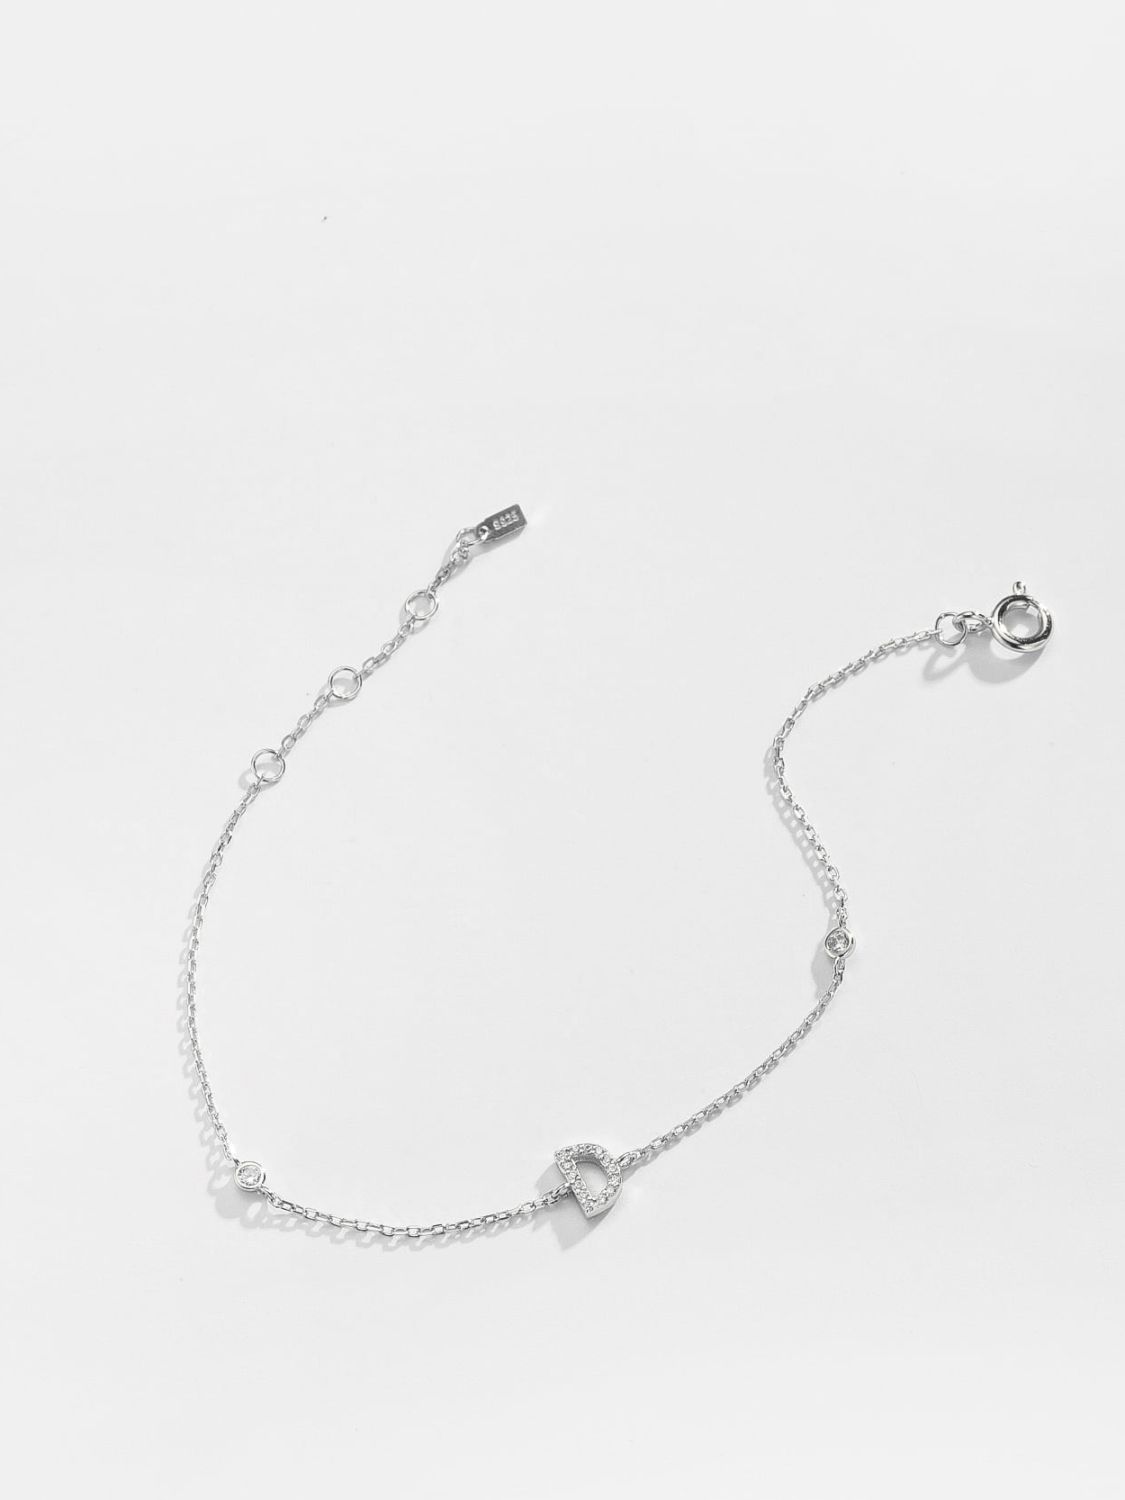 A To F Zircon 925 Sterling Silver Bracelet - Women’s Jewelry - Bracelets - 24 - 2024